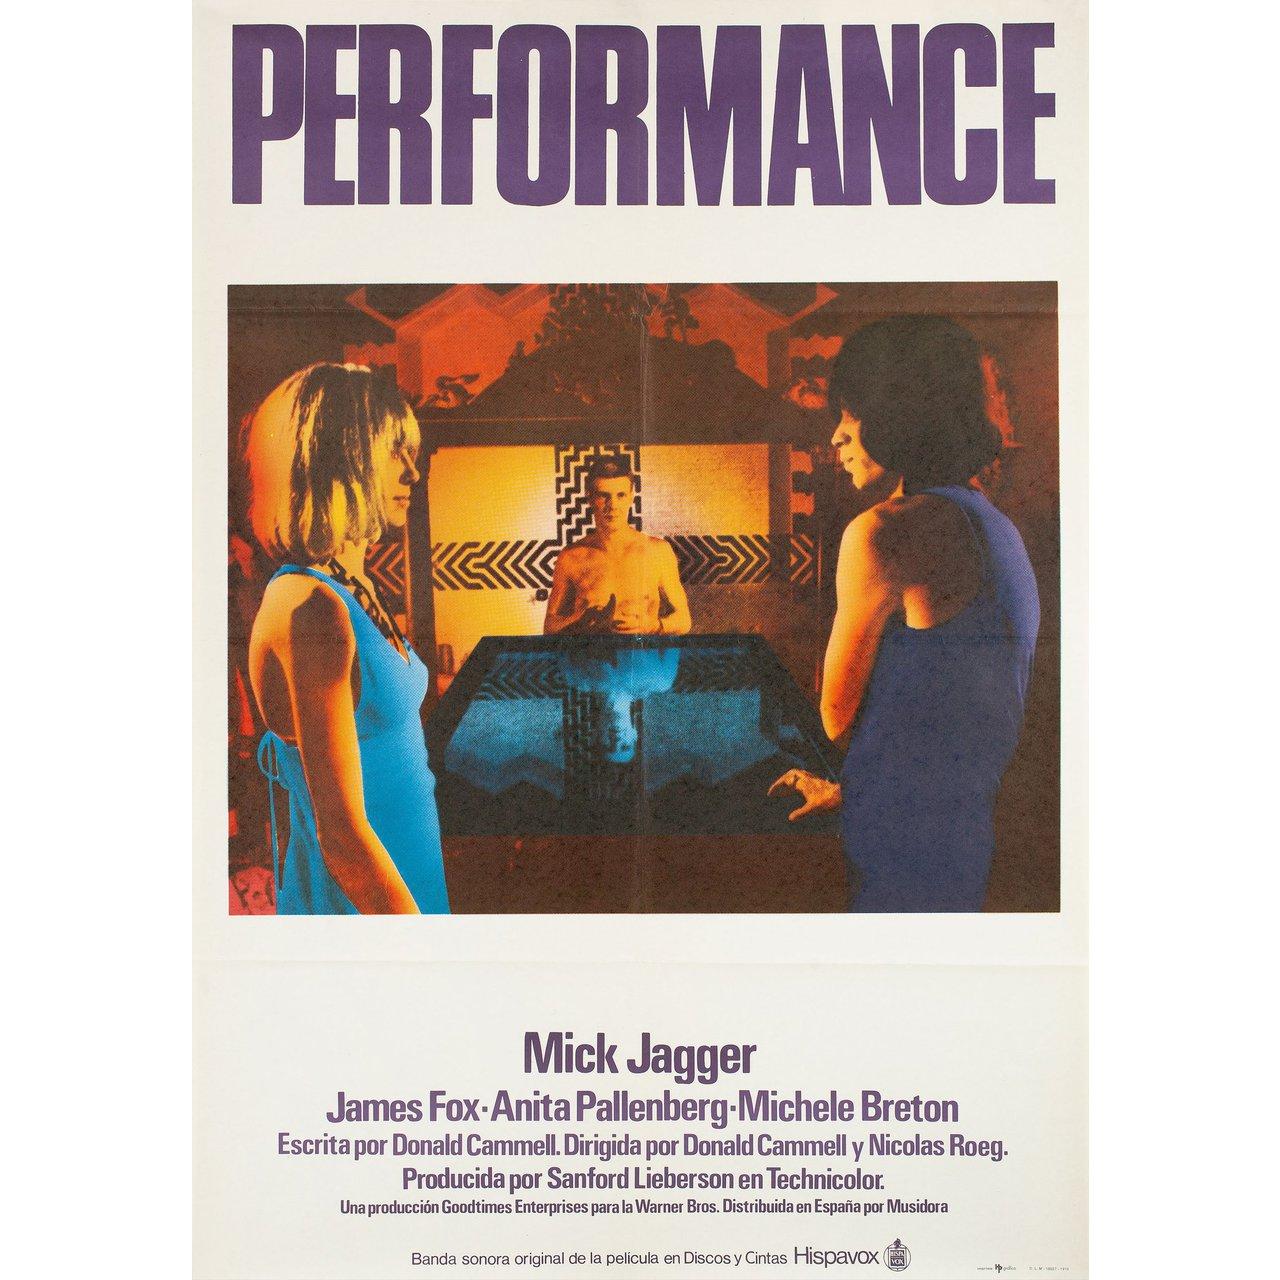 Affiche B1 originale de la réédition espagnole de 1978 du film Performance réalisé par Donald Cammell / Nicolas Roeg en 1970 avec James Fox / Mick Jagger / Anita Pallenberg / Michele Breton. Bon état, plié. De nombreuses affiches originales ont été